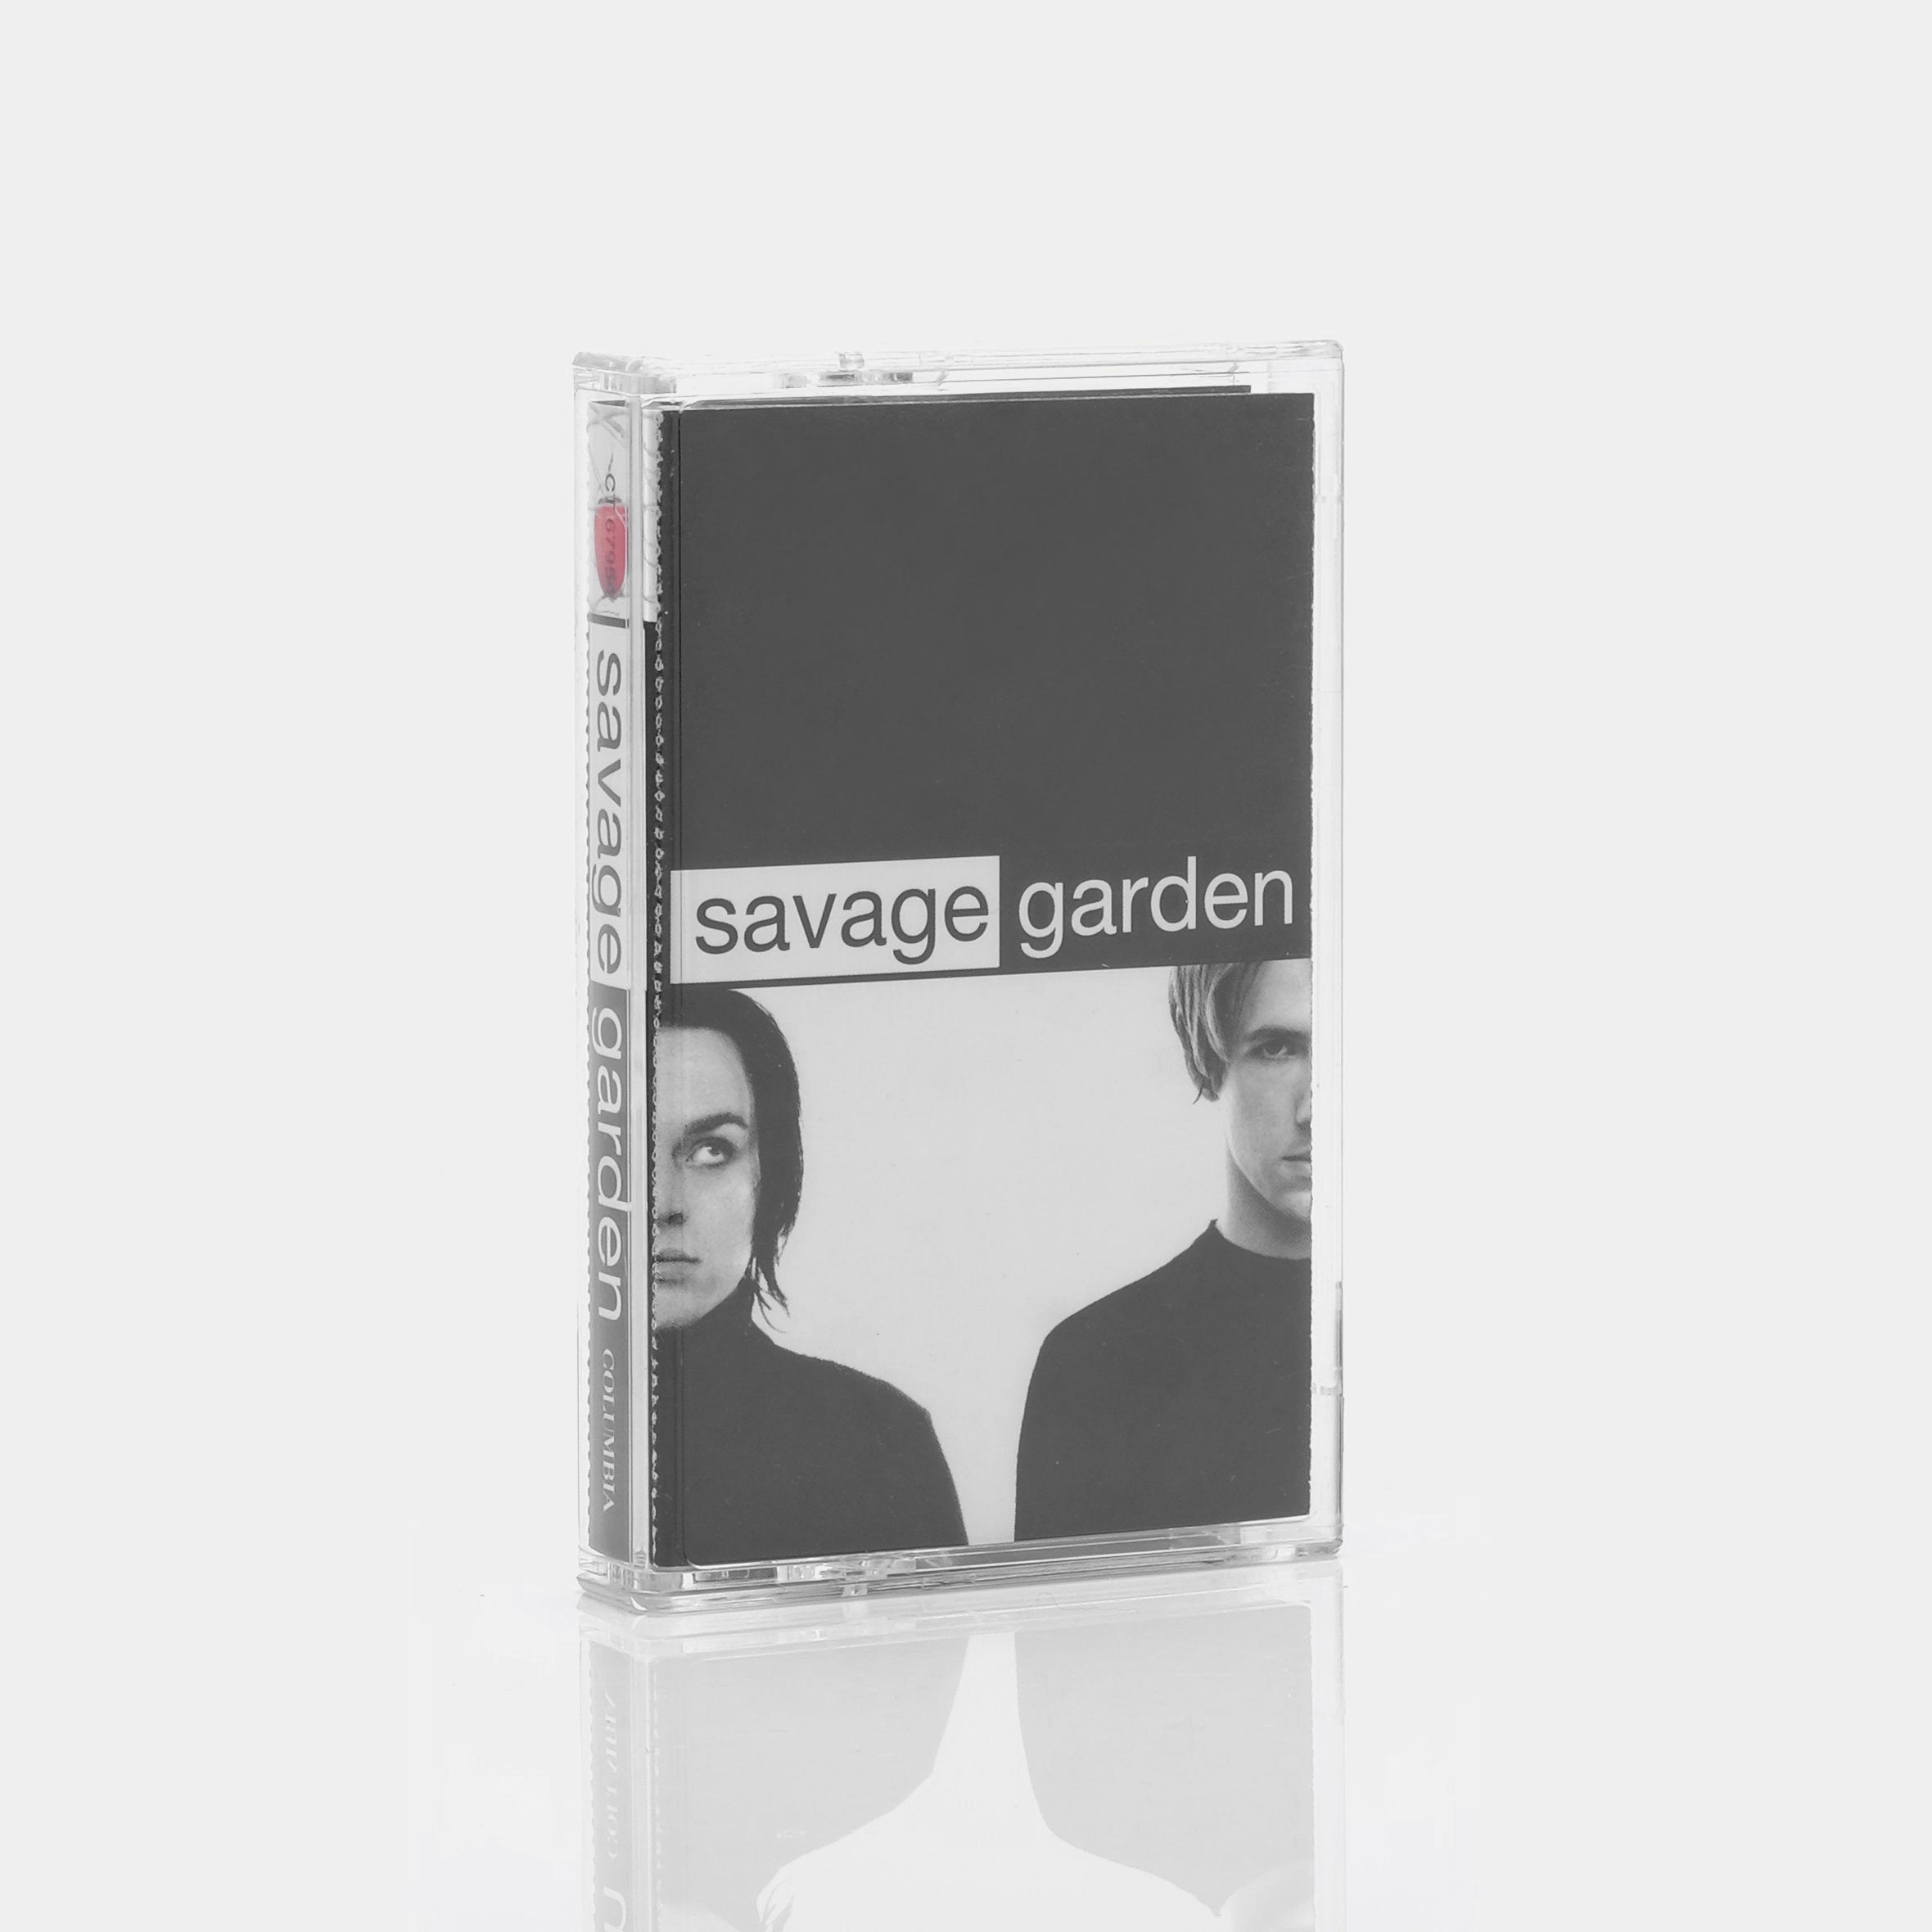 Savage Garden - Savage Garden Cassette Tape